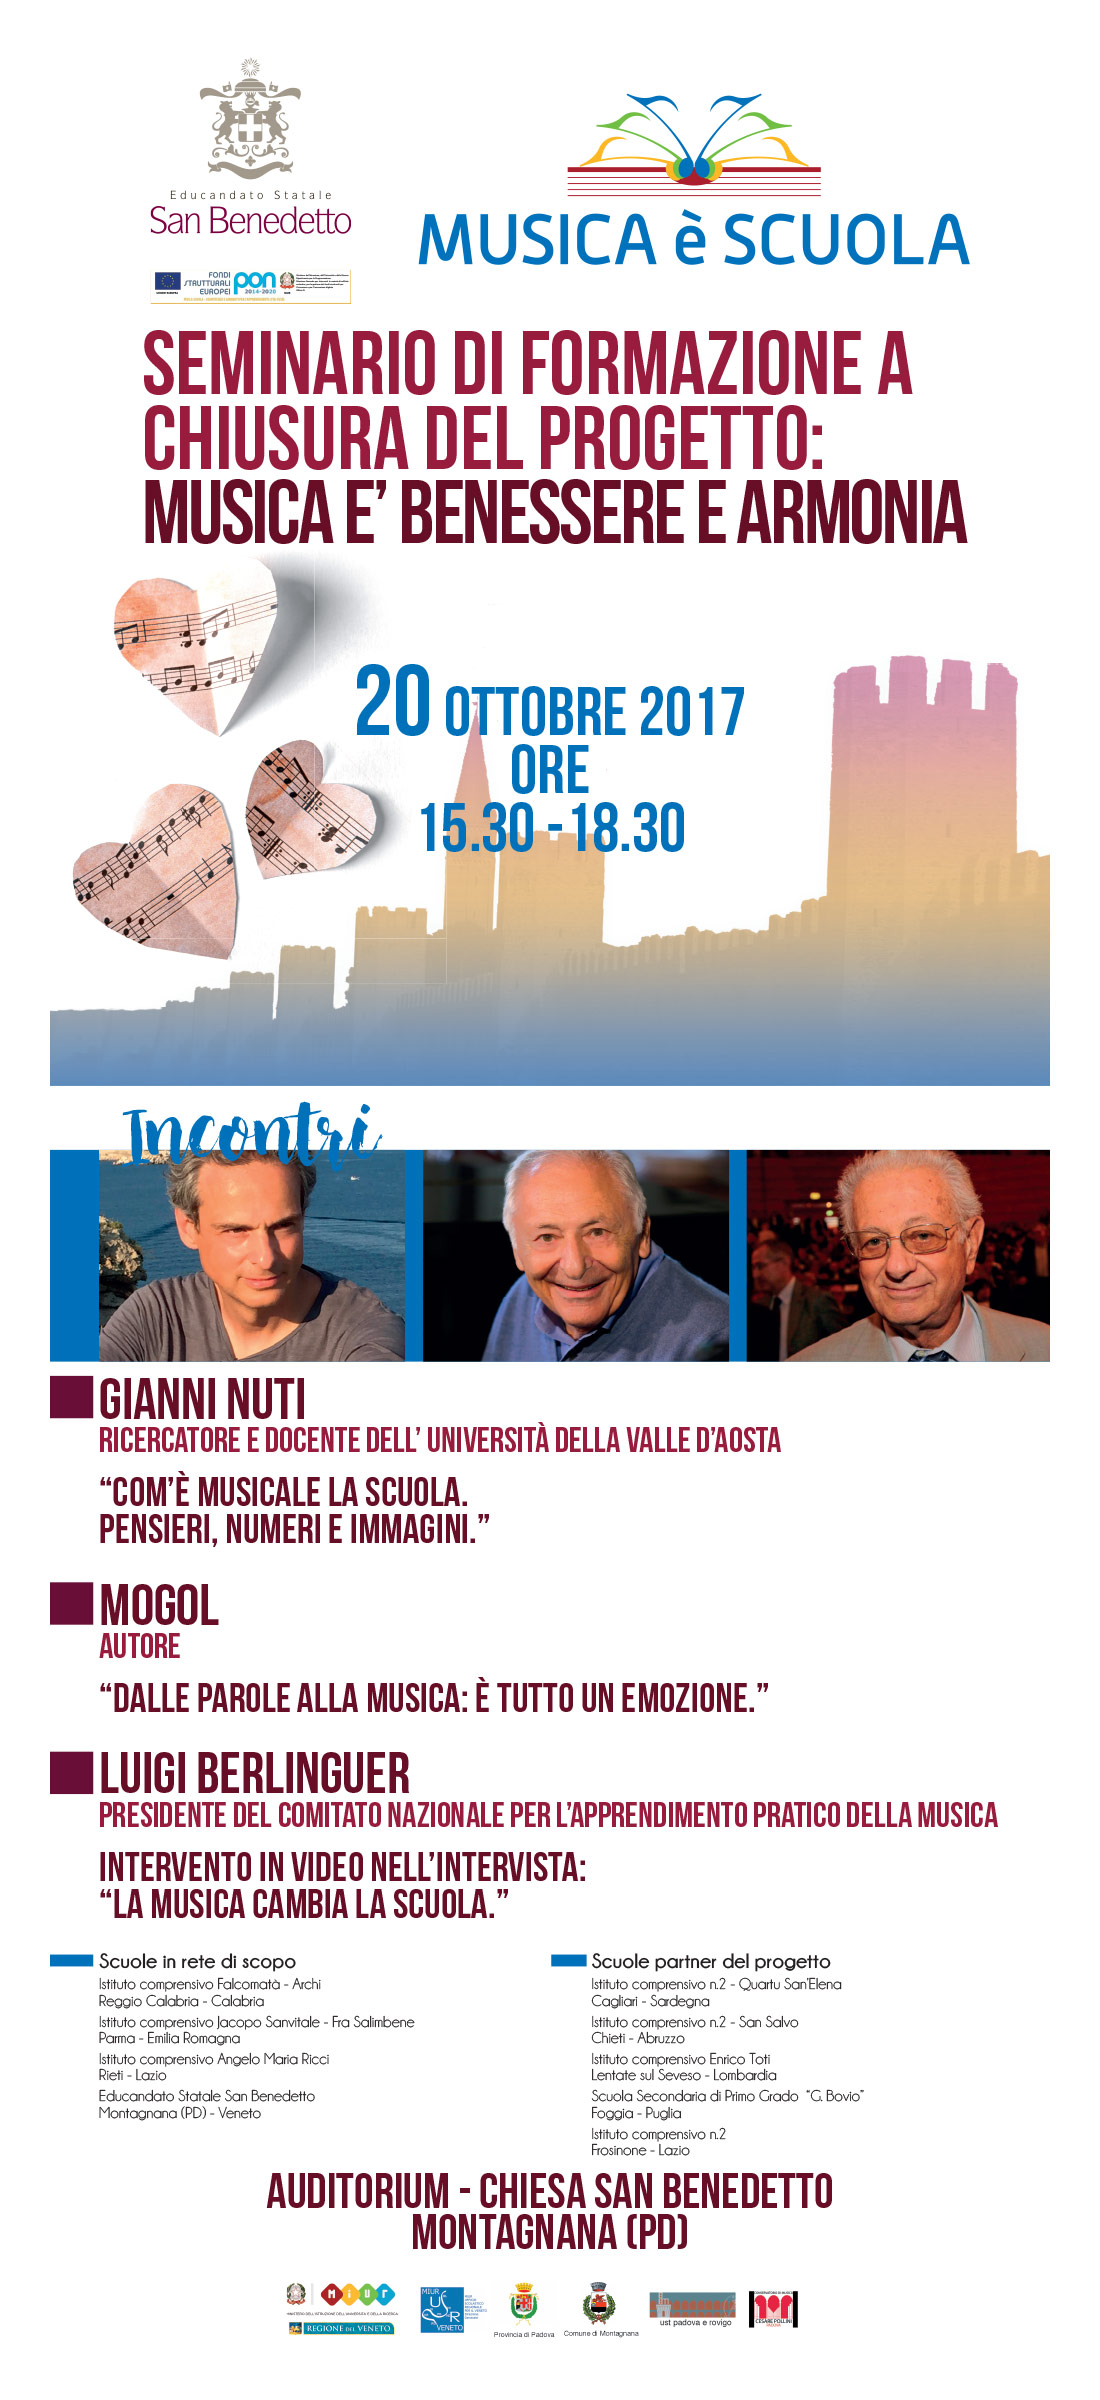 Montagnana 20/10/2017 - Seminario di formazione a chiusura del progetto 'Musica è benesse e armonia'